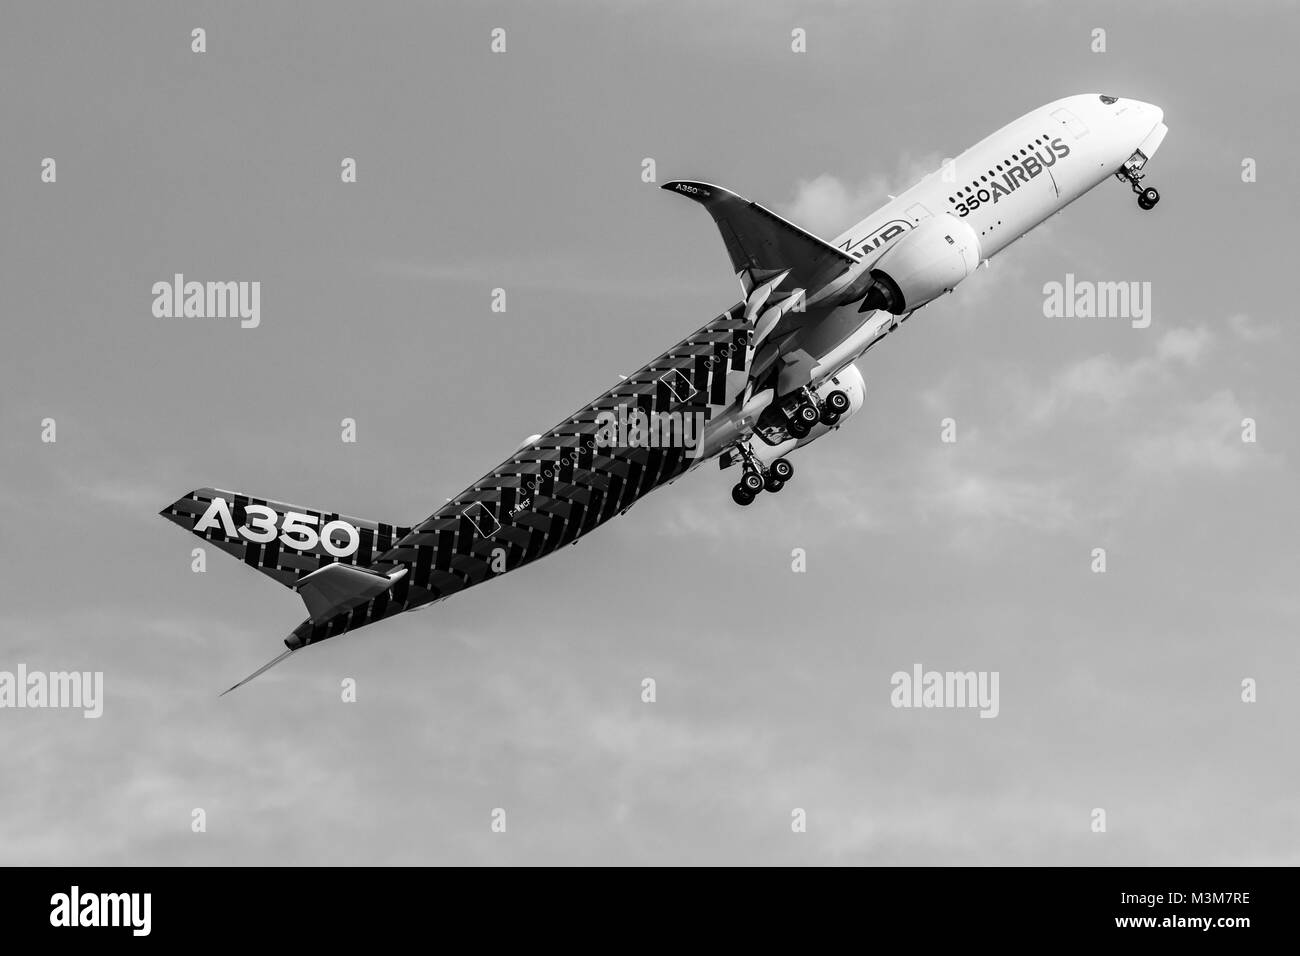 BERLIN, Deutschland - 3. Juni 2016: Demonstrationsflug Airbus A350 XWB. Schwarz und weiß. Ausstellung ILA Berlin Airshow 2016 Stockfoto